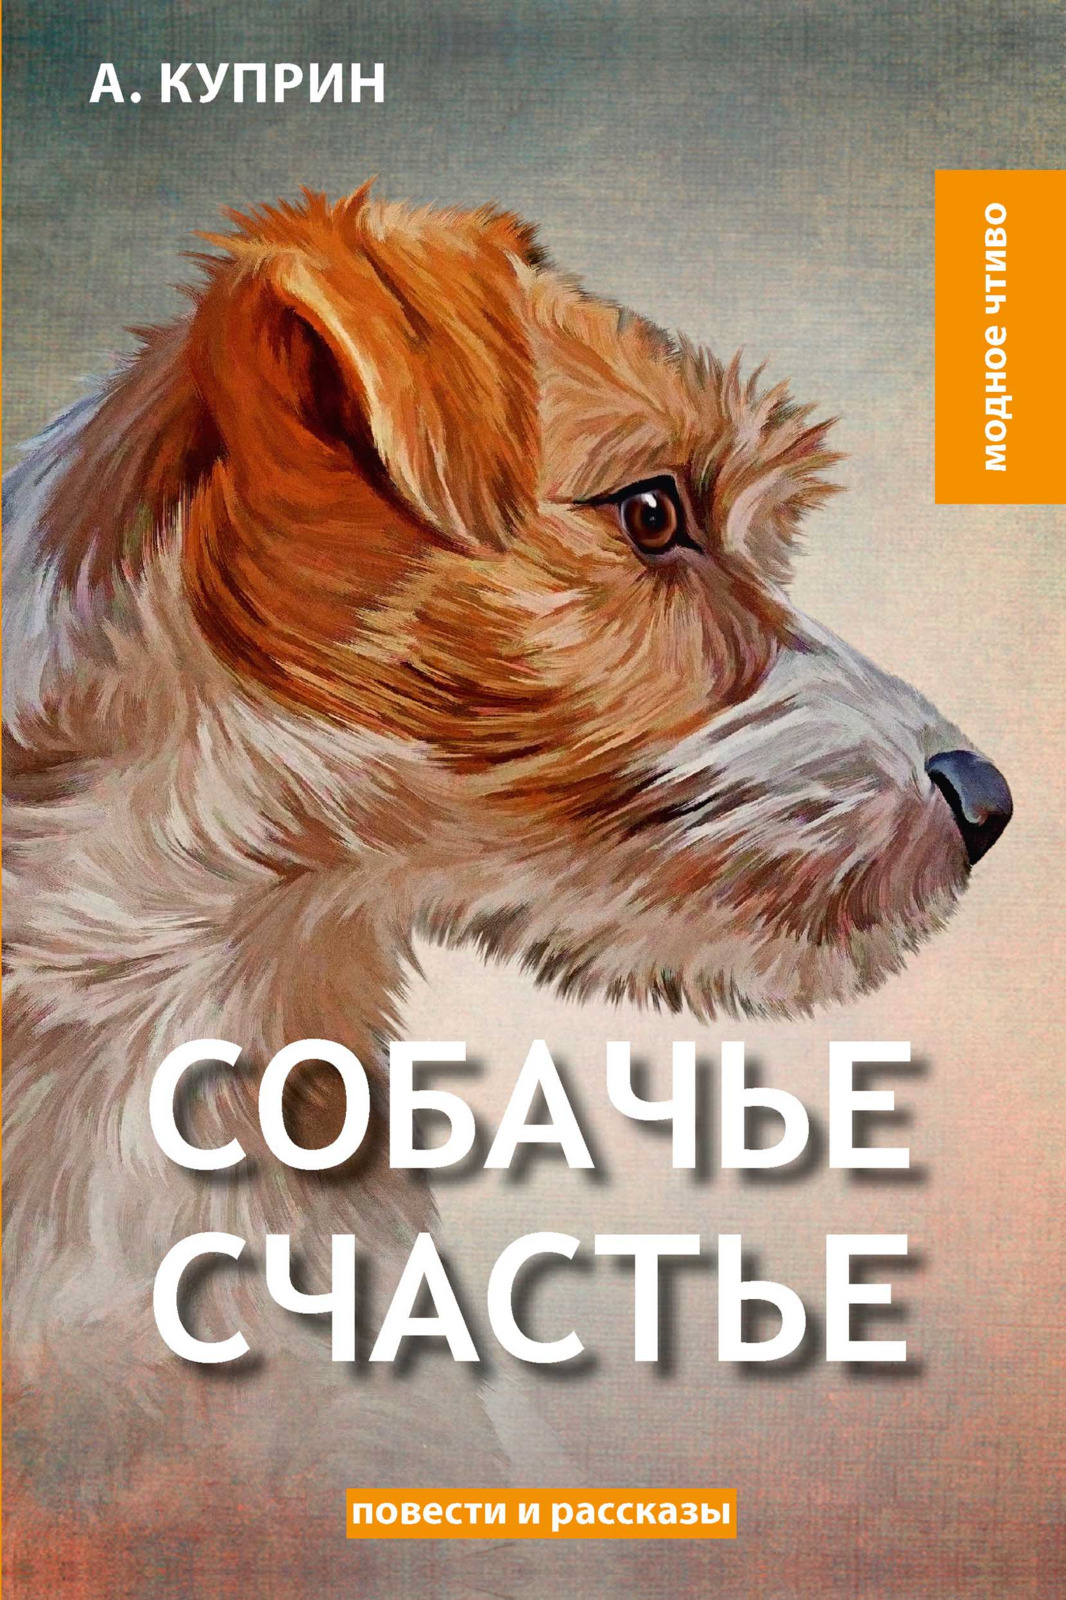 История собак книги. Куприн а.и. "Собачье счастье". Книги про собак. Произведения про собак. Собачье счастье книга.